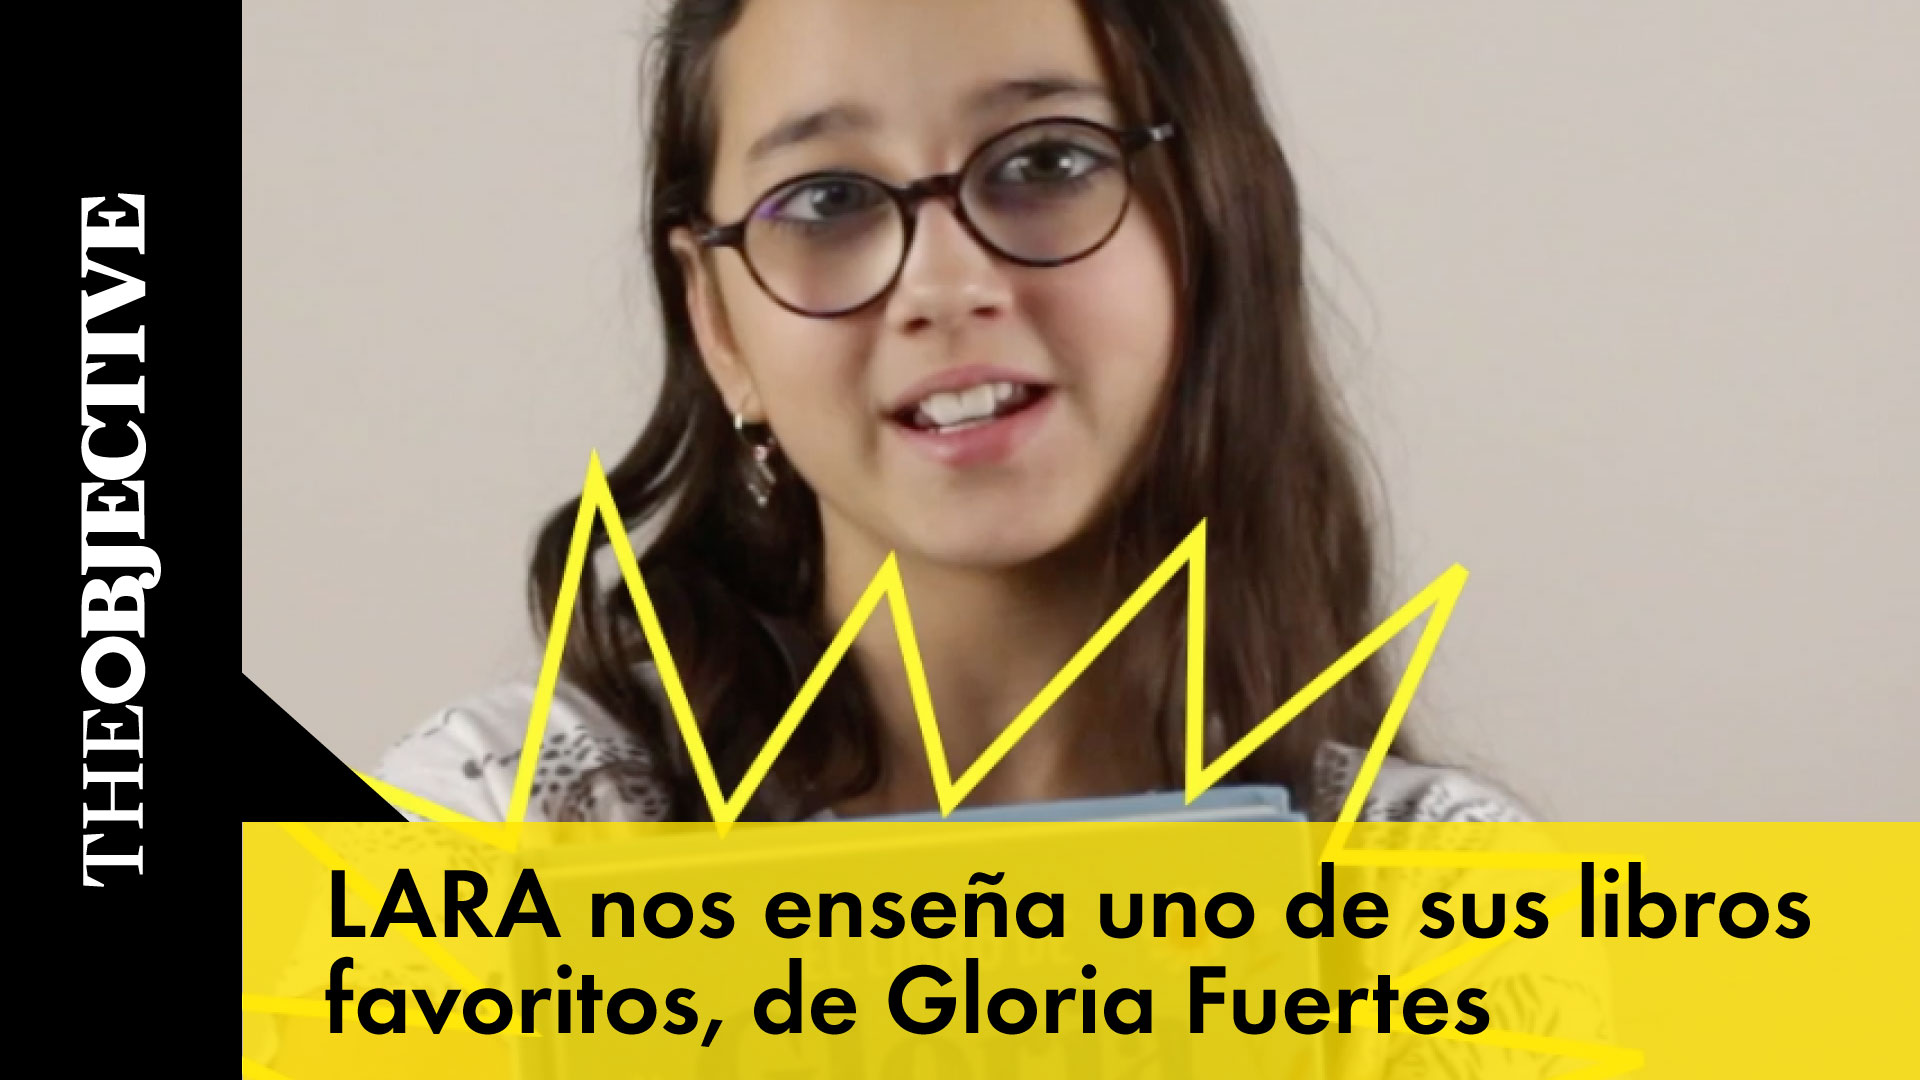 Lara nos enseña uno de sus libros favoritos, de Gloria Fuertes